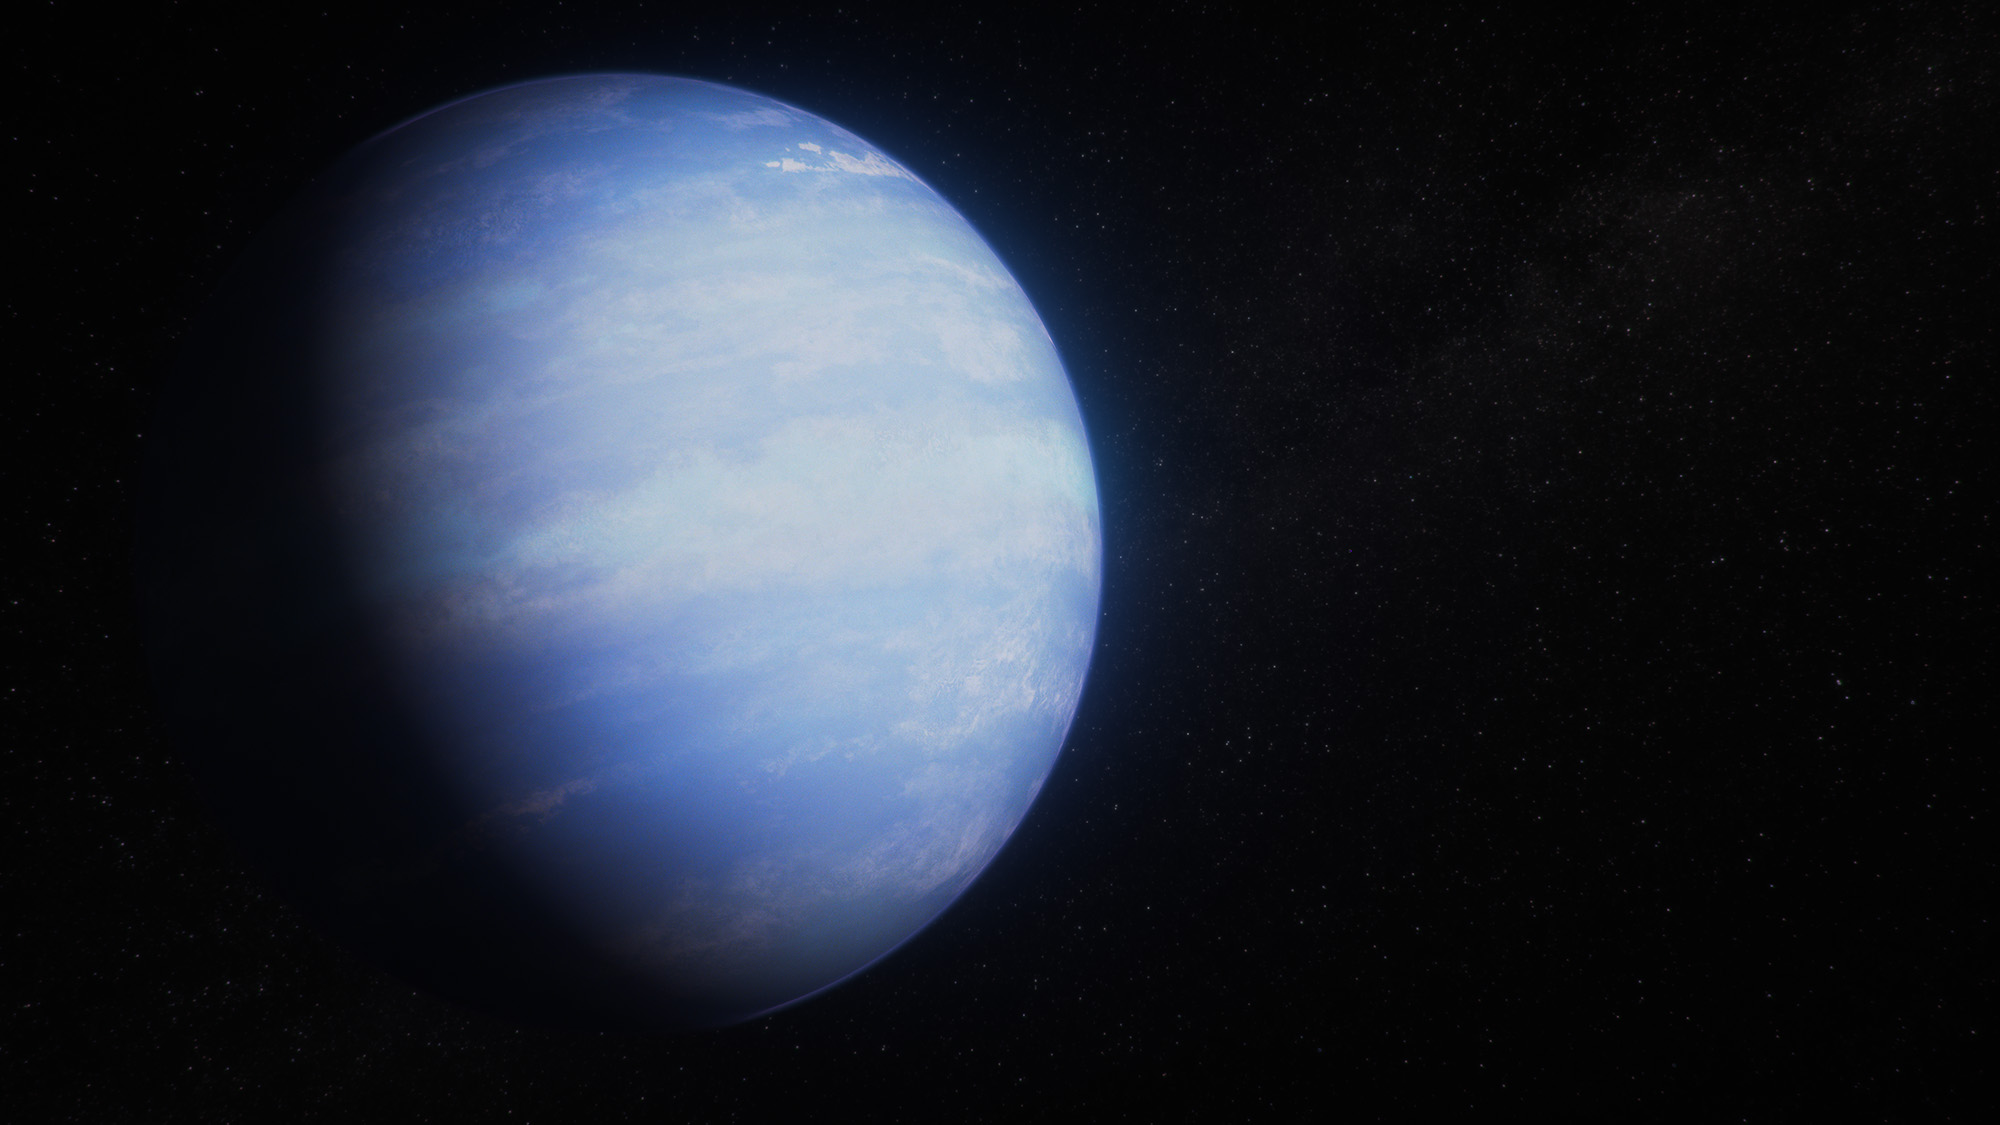 Ilustración de un exoplaneta con una atmósfera azul nebulosa y bandas sueltas de nubes sobre el fondo negro del espacio. Las tres cuartas partes derechas del planeta están iluminadas por una estrella que no se muestra en la ilustración. El cuarto izquierdo está en la sombra. El terminador, el límite entre el lado diurno y el nocturno es gradual, no nítido. El planeta es de color azul claro con bandas sueltas de nubes blancas. El limbo del planeta (el borde) tiene un sutil resplandor azul.